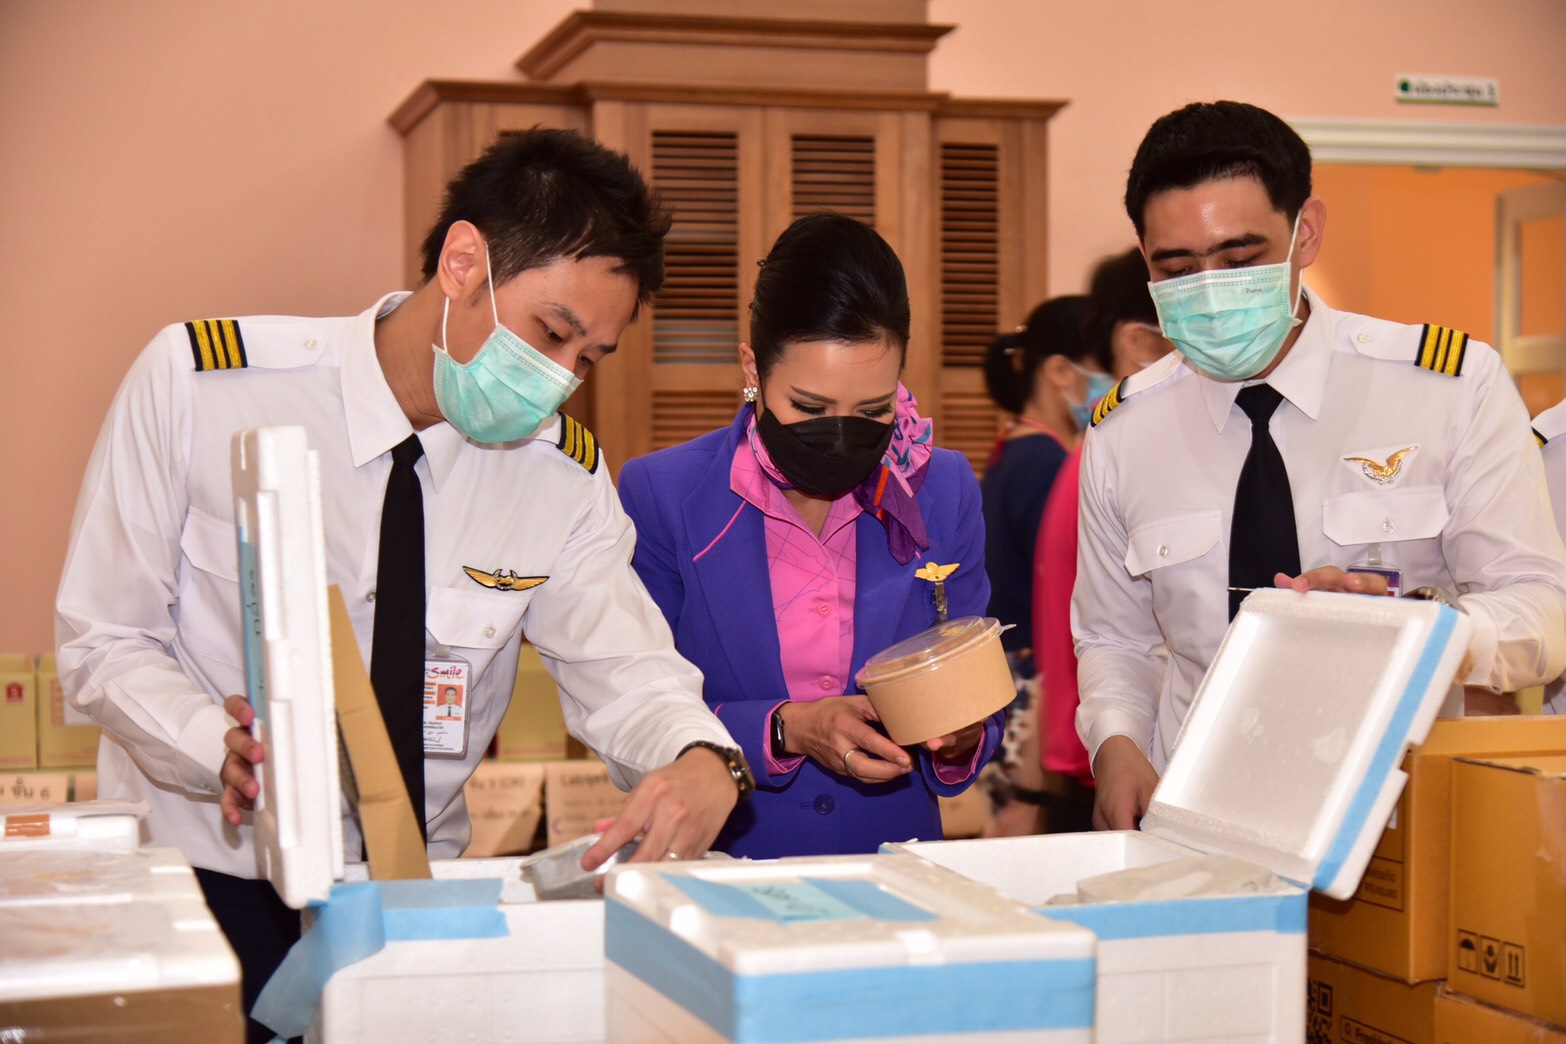 การบินไทยร่วมกับไทยสมายล์จัดโครงการ ด้วยรักและรอยยิ้ม ส่งพลังใจให้กับทีมแพทย์ไทยสู้วิกฤตโควิด-19